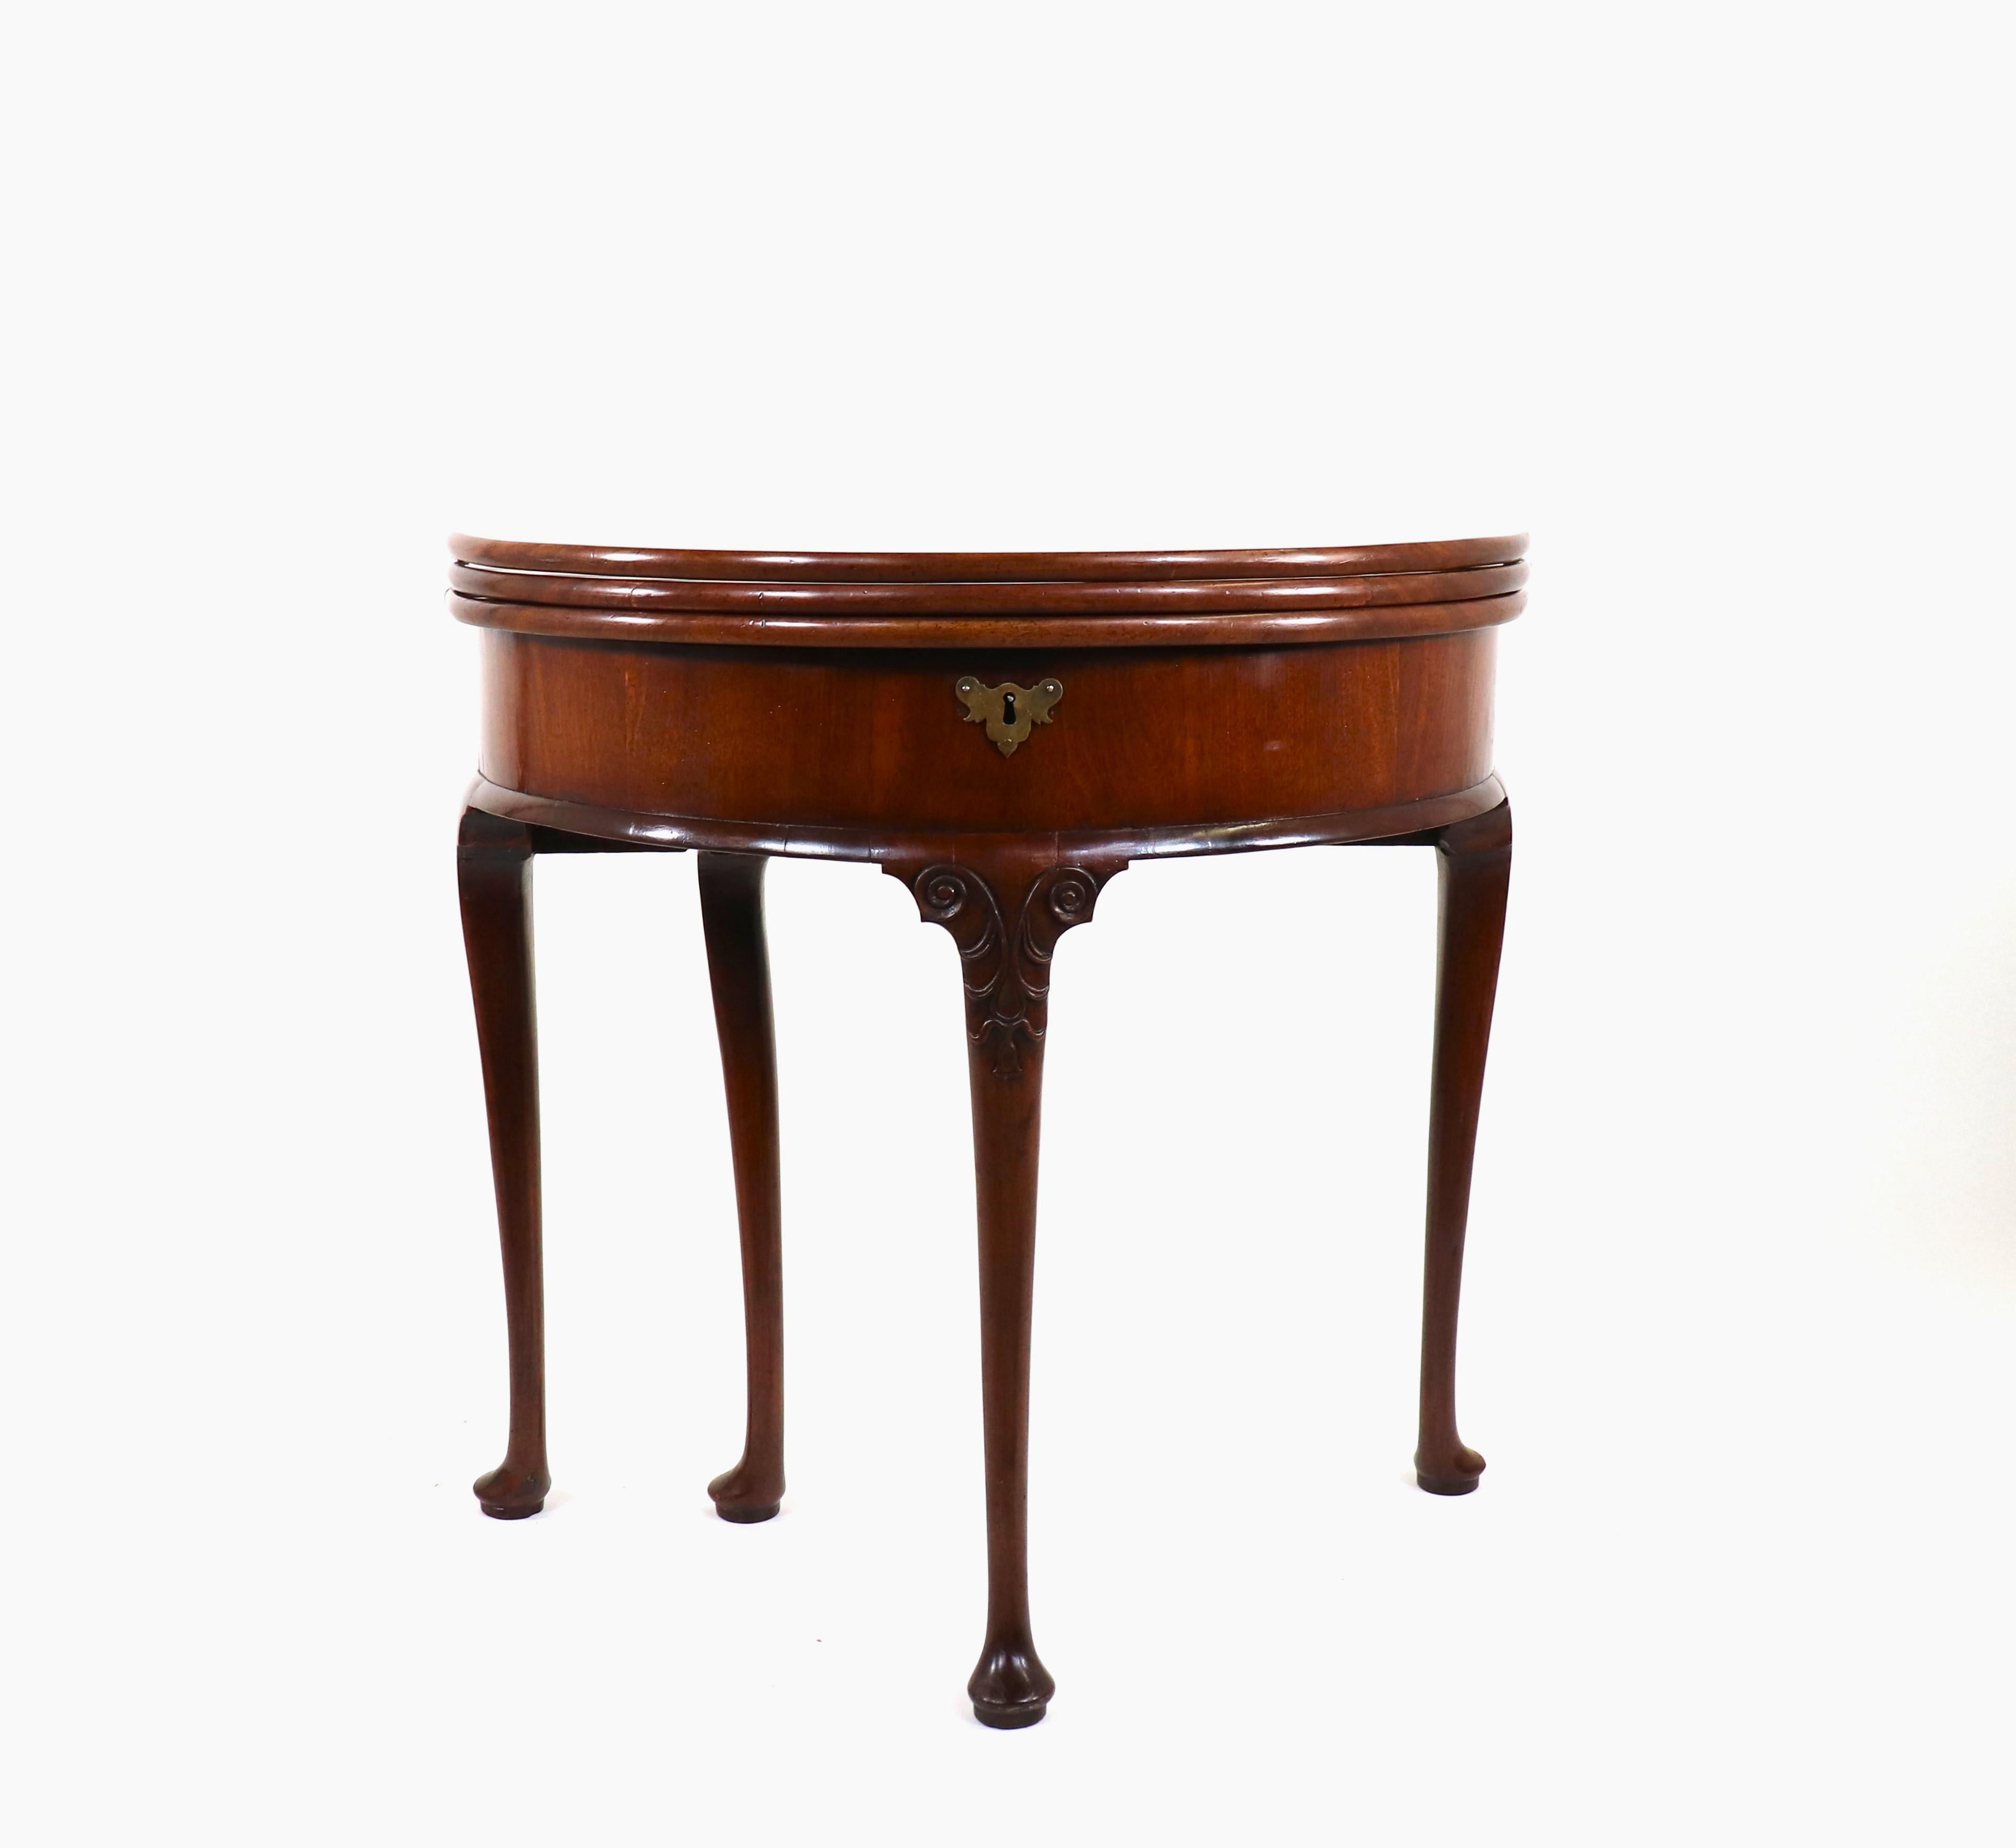 Le style George III a produit des pièces d'une qualité exceptionnelle que de nombreux collectionneurs considèrent comme les plus beaux exemples de design de meubles. À cette époque, les fabricants de meubles géorgiens préféraient l'acajou au noyer,